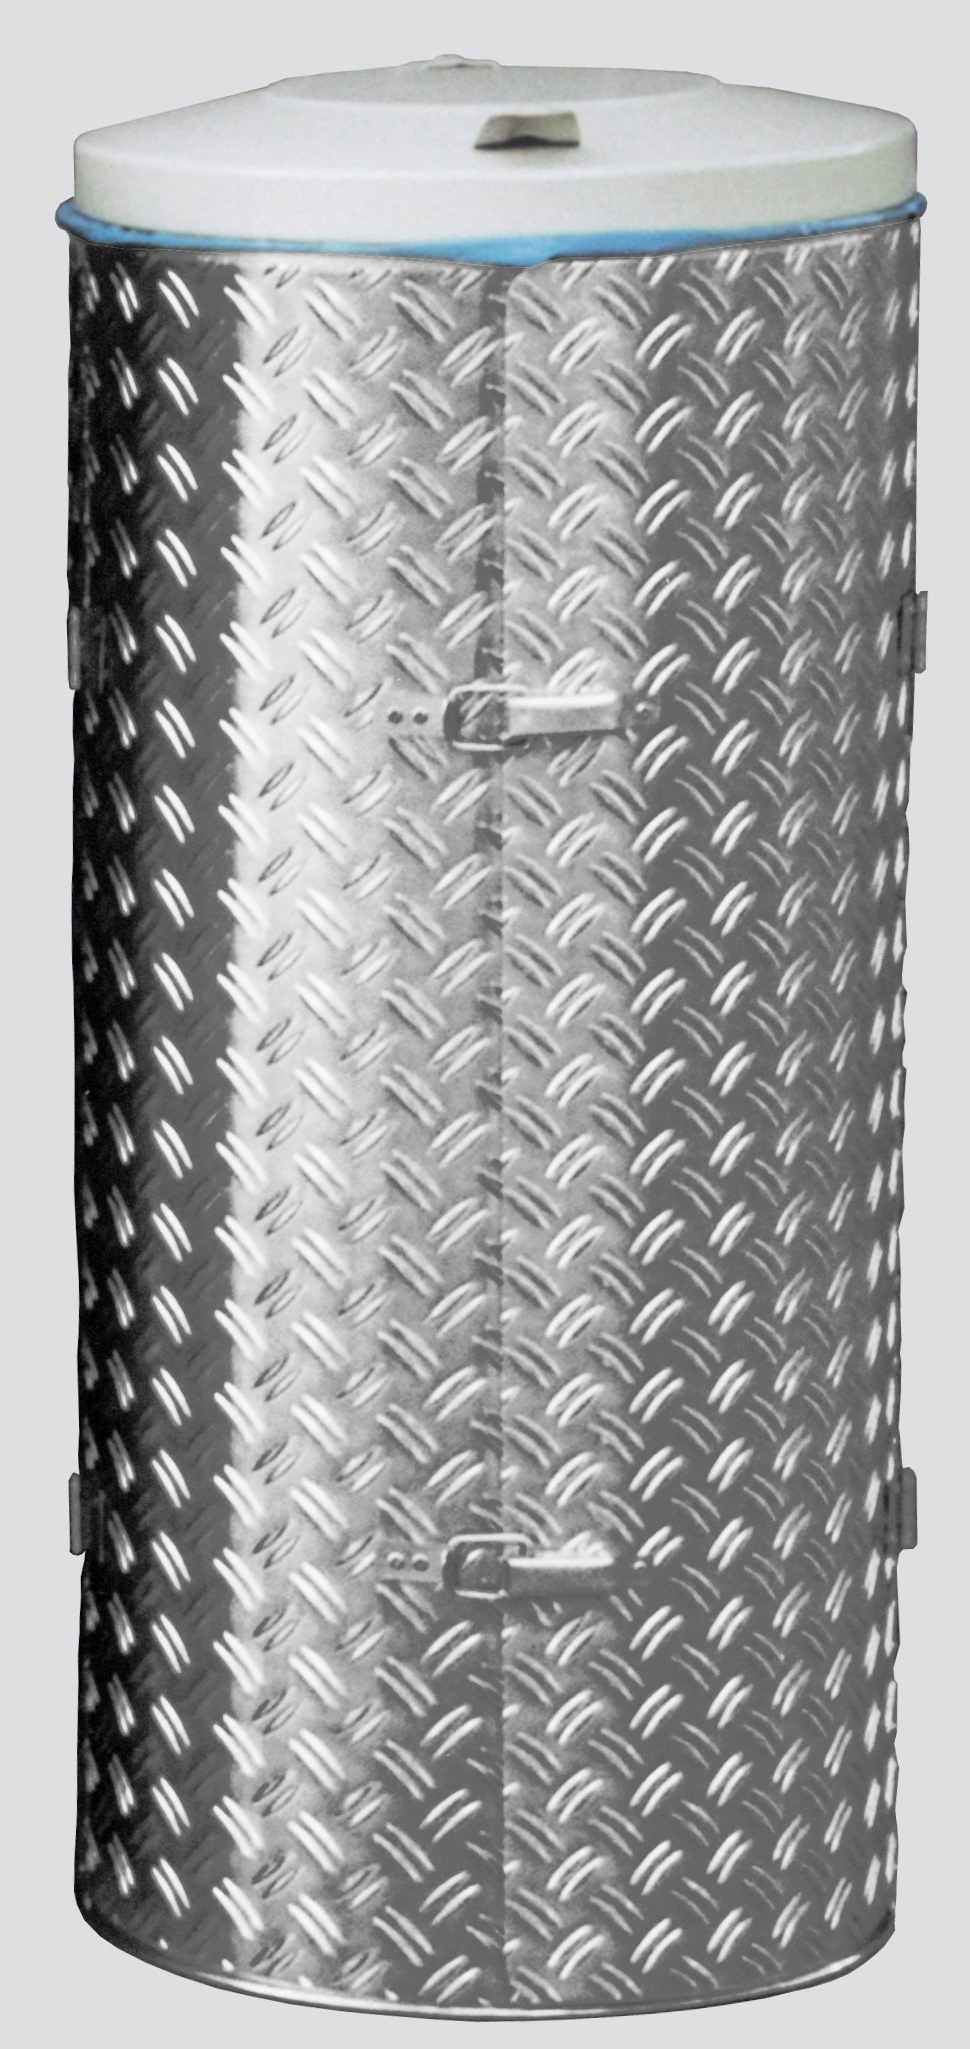 Kompakter Abfallsammler mit Türe | 120 Liter, HxBxT 99x43,5x43,5cm | Edelstahl | Alu-Duett-Blech | Deckel grau